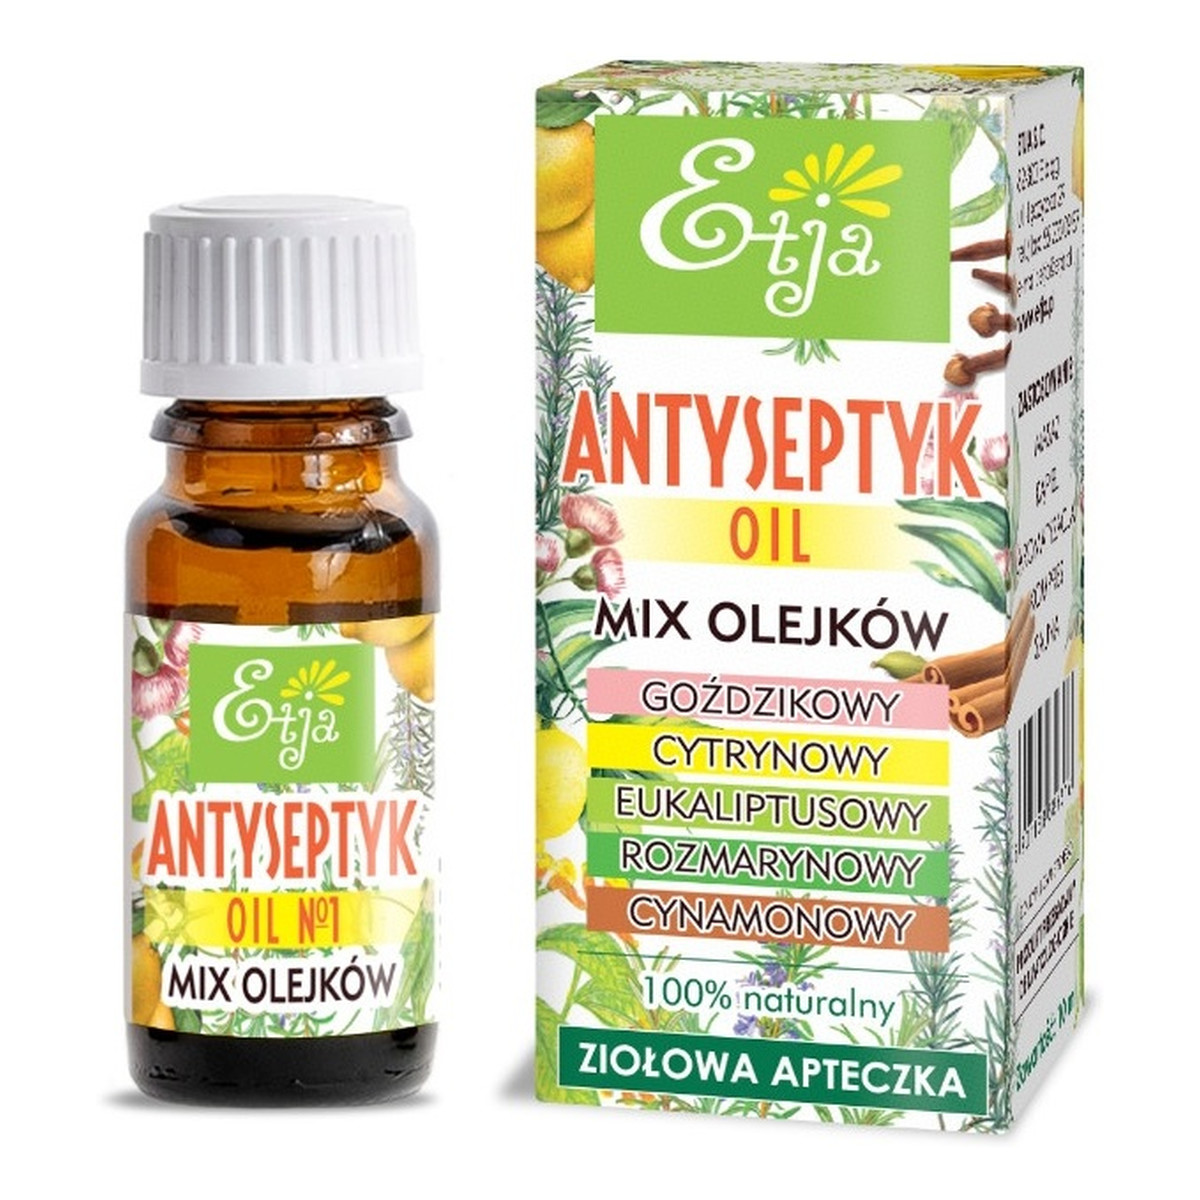 Etja Antyseptyk oil mix olejków 10ml